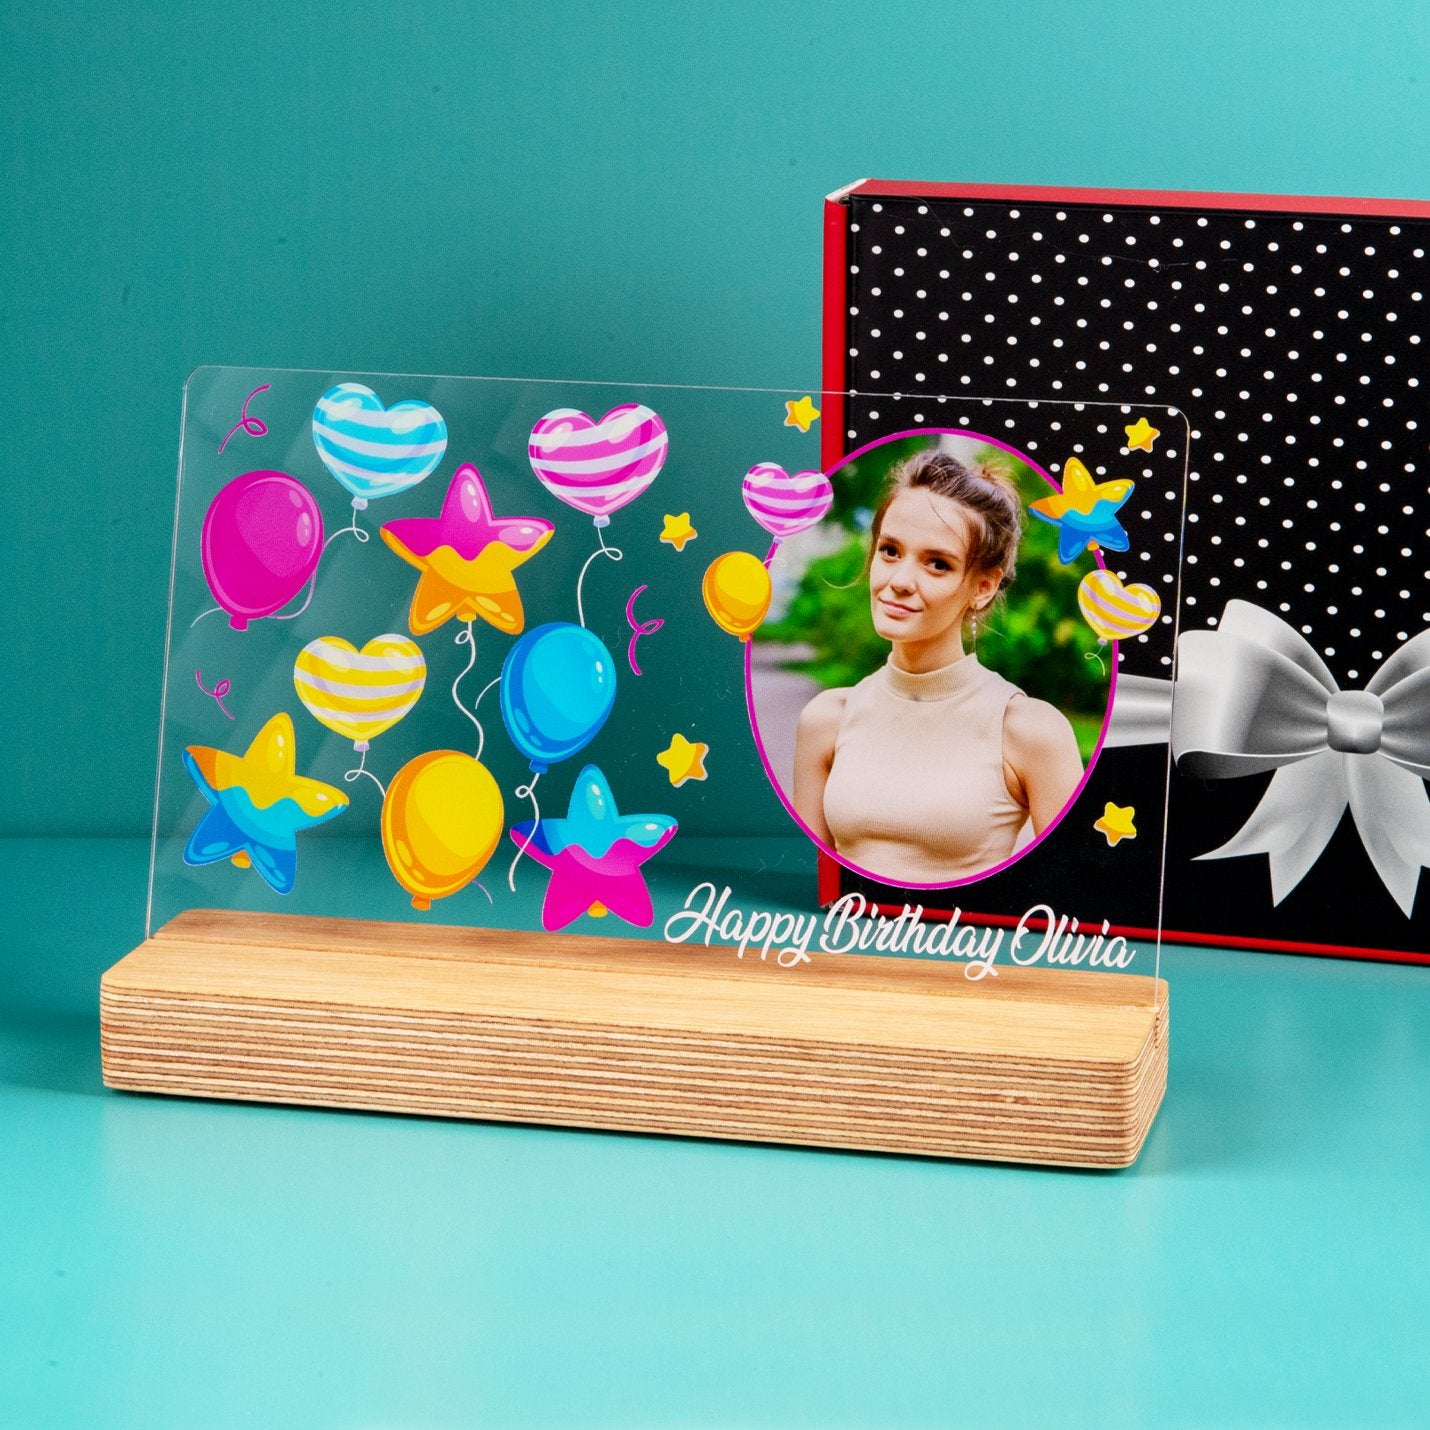 Personalisiertes Fotogeschenk zum Geburtstag mit hochwertigem UV-Druck Holzaufsteller & Geschenkbox